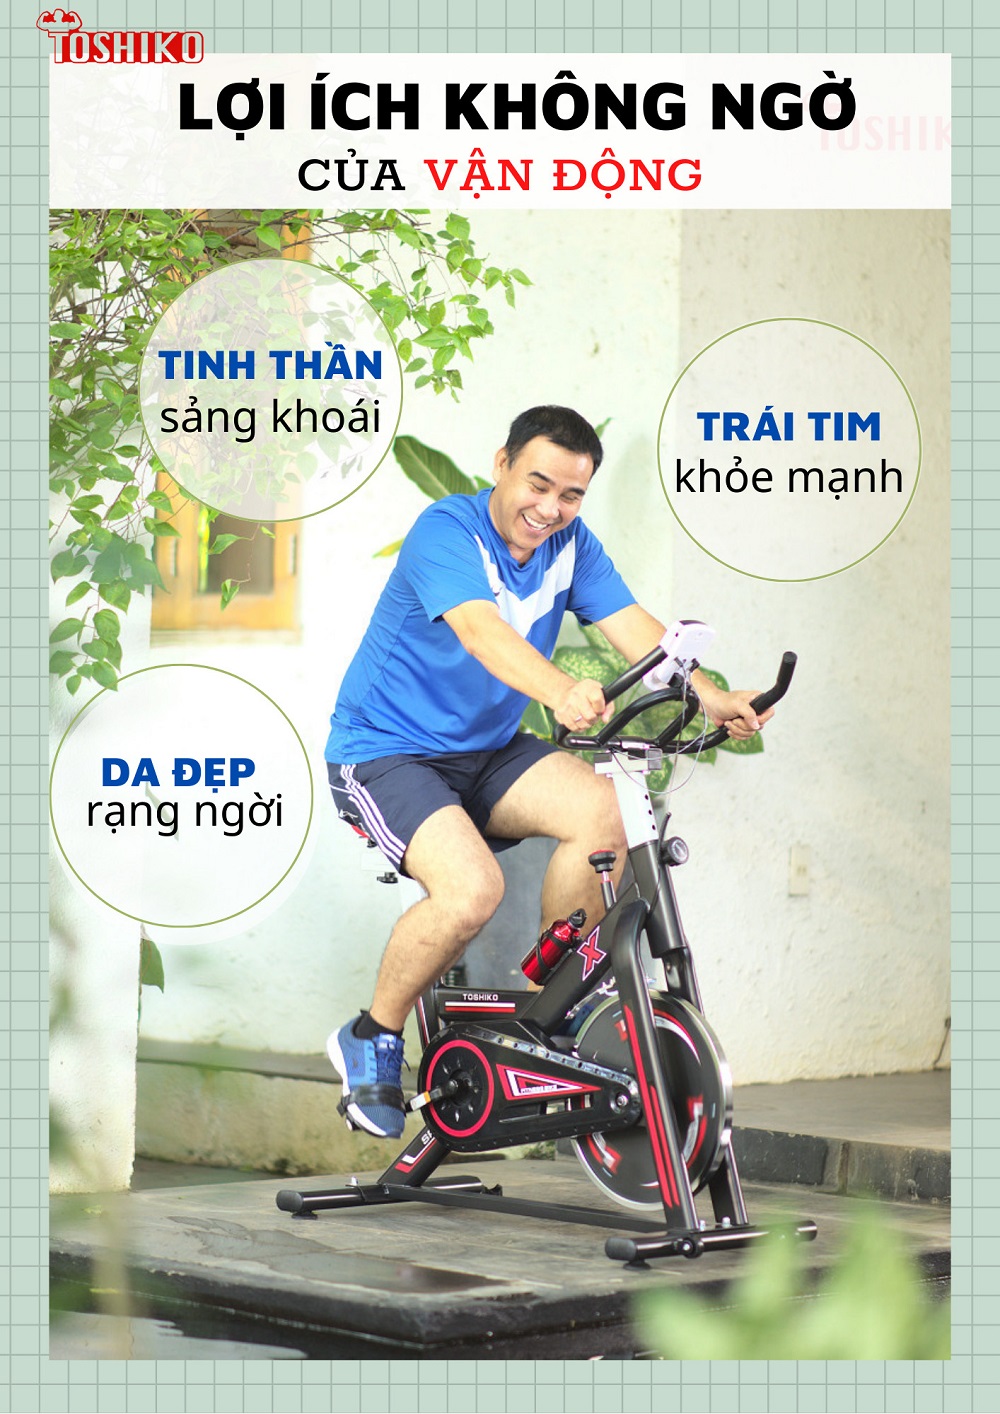 Tập luyện cùng xe đạp trong nhà mang đến nhiều lợi ích cho sức khỏe